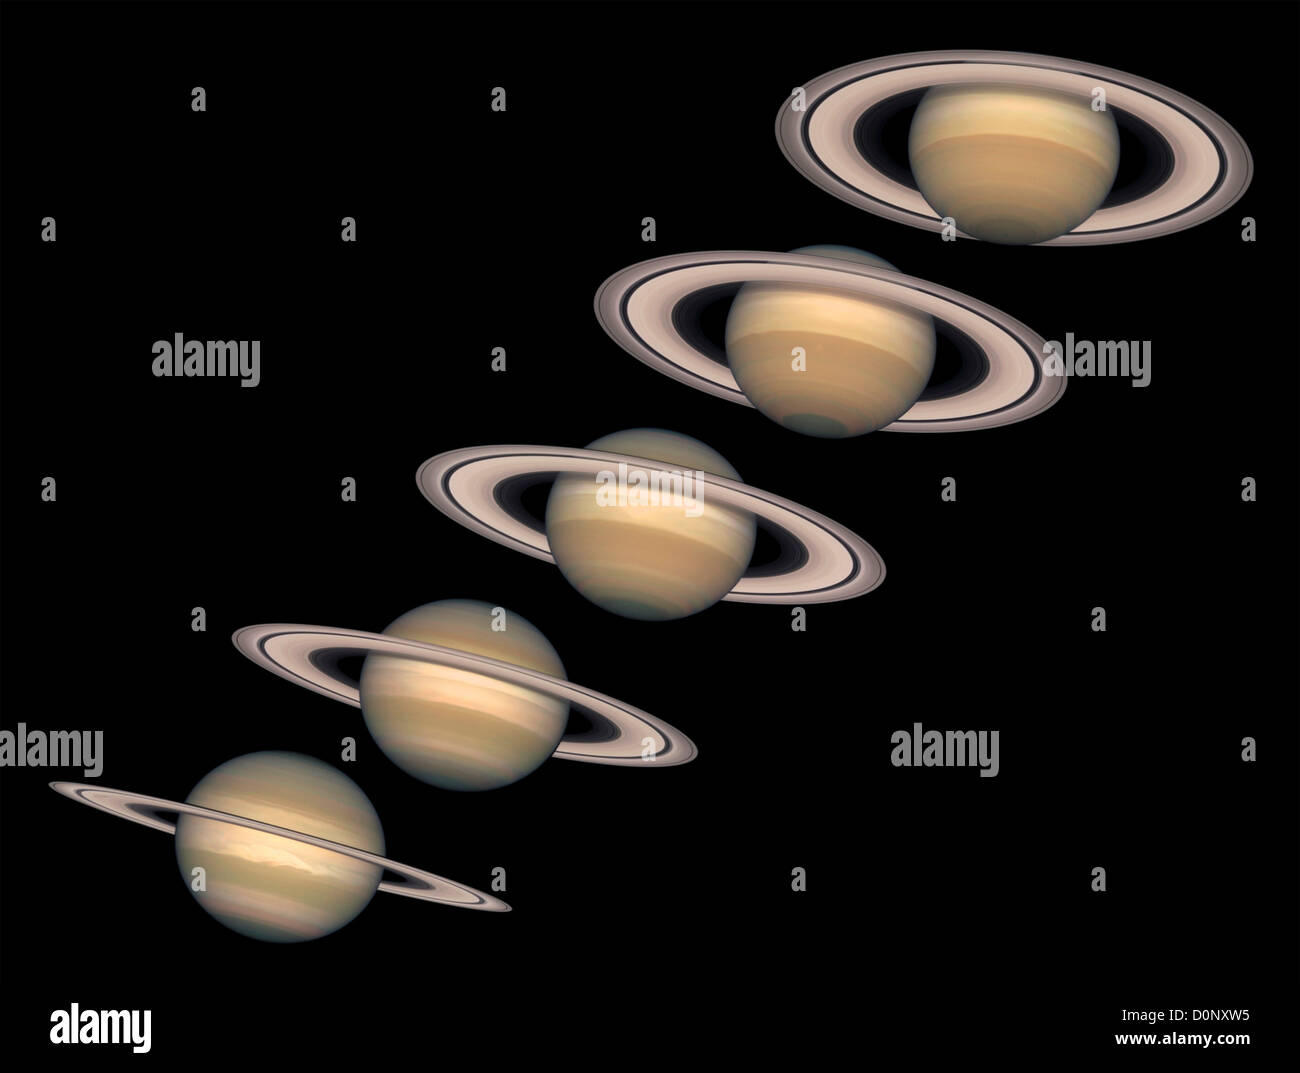 Un changement de saisons sur Saturne, vue par Hubble Space Telecope Banque D'Images